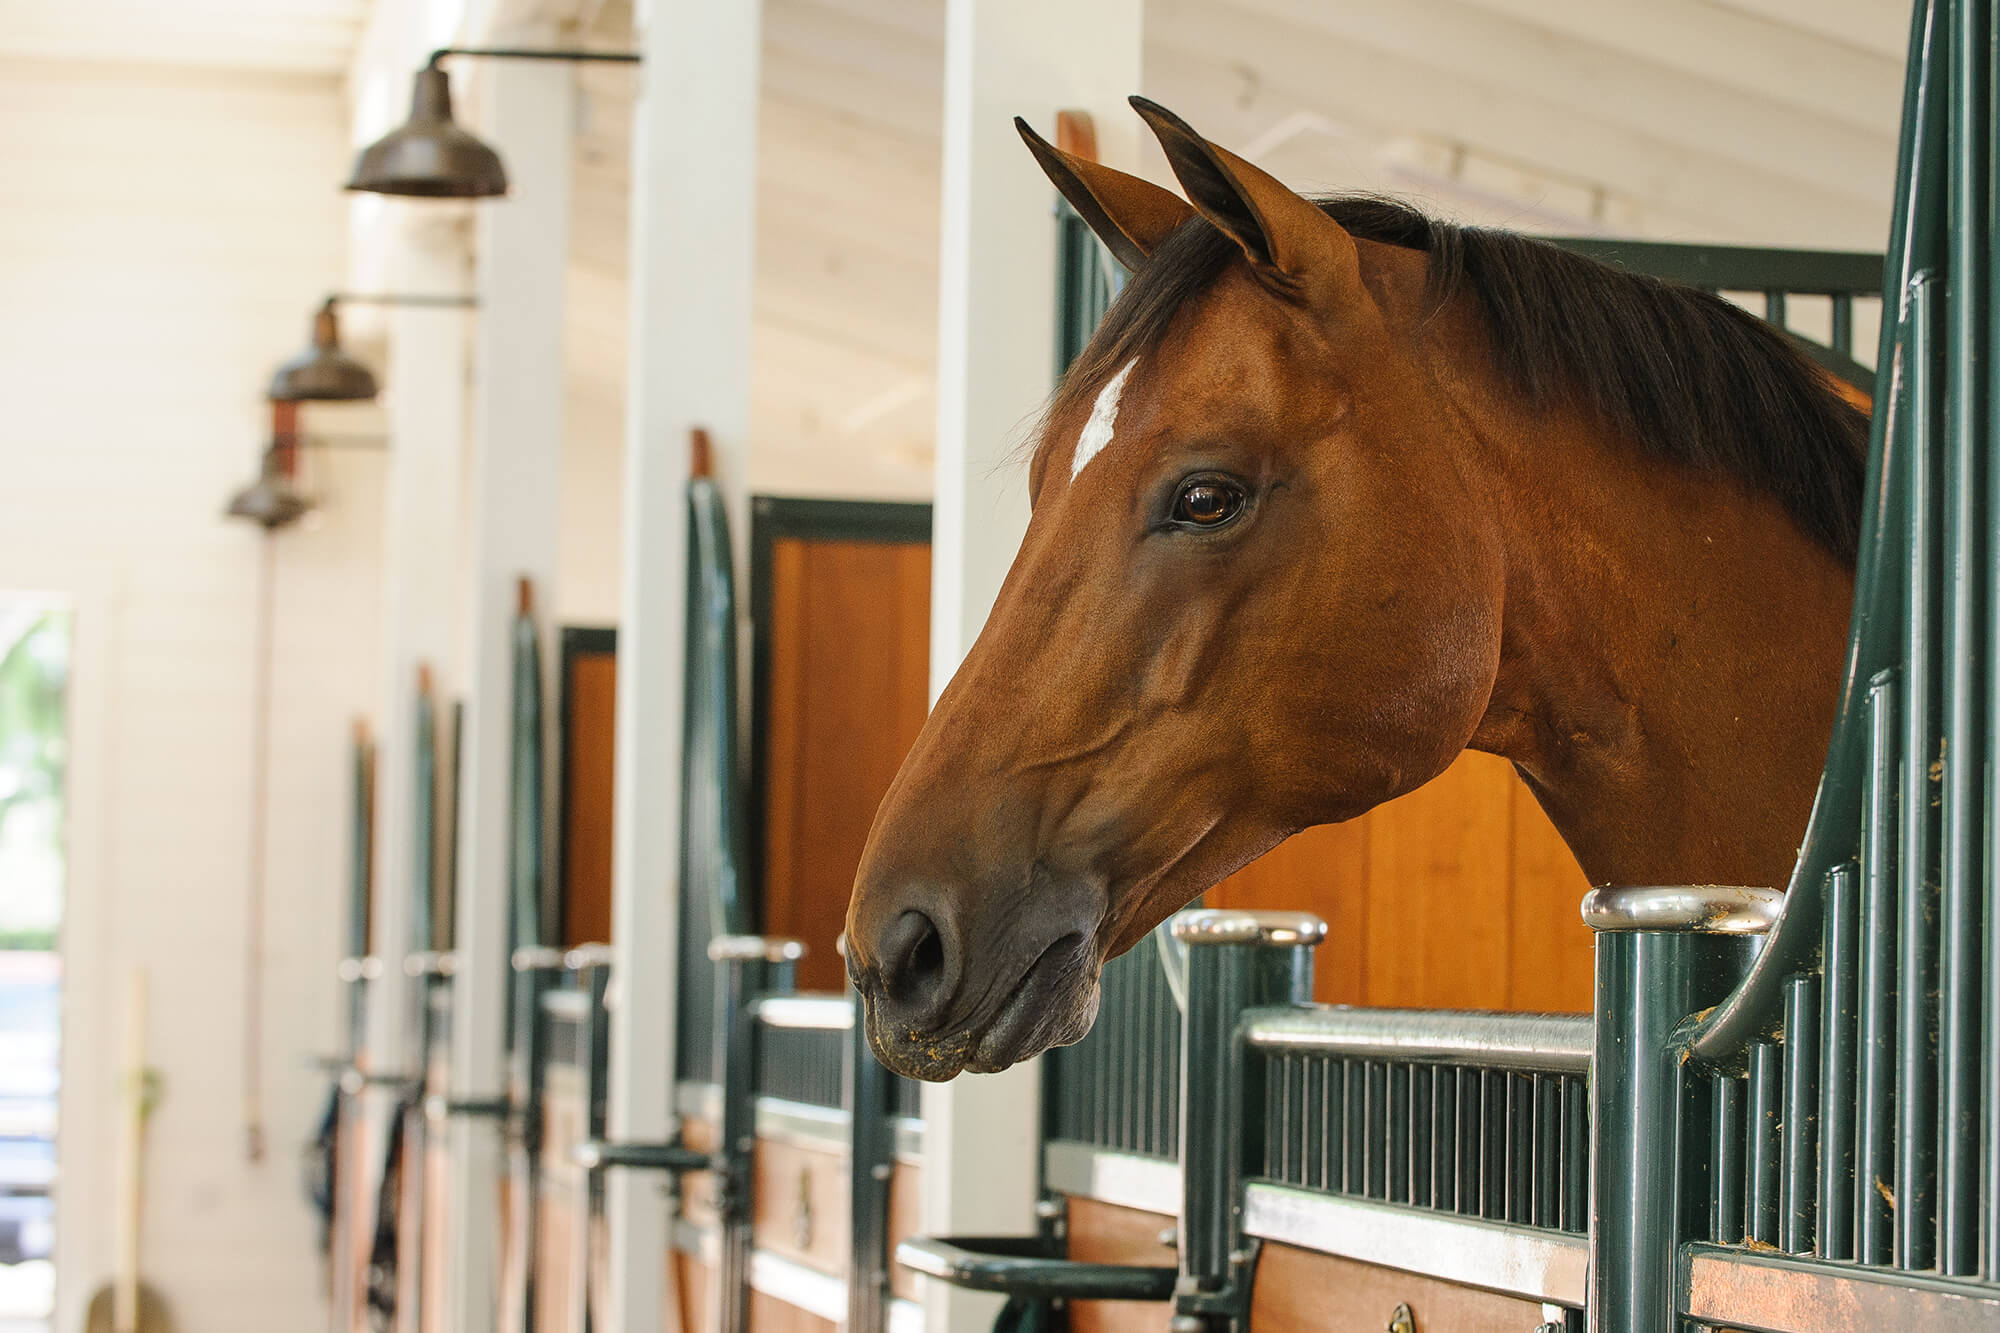 Pferd schaut neugierig aus einer Stallbox in einer hellen, sauberen Stallgasse mit traditionellem Design und guter Beleuchtung, was eine ruhige und komfortable Umgebung für Pferde widerspiegelt.